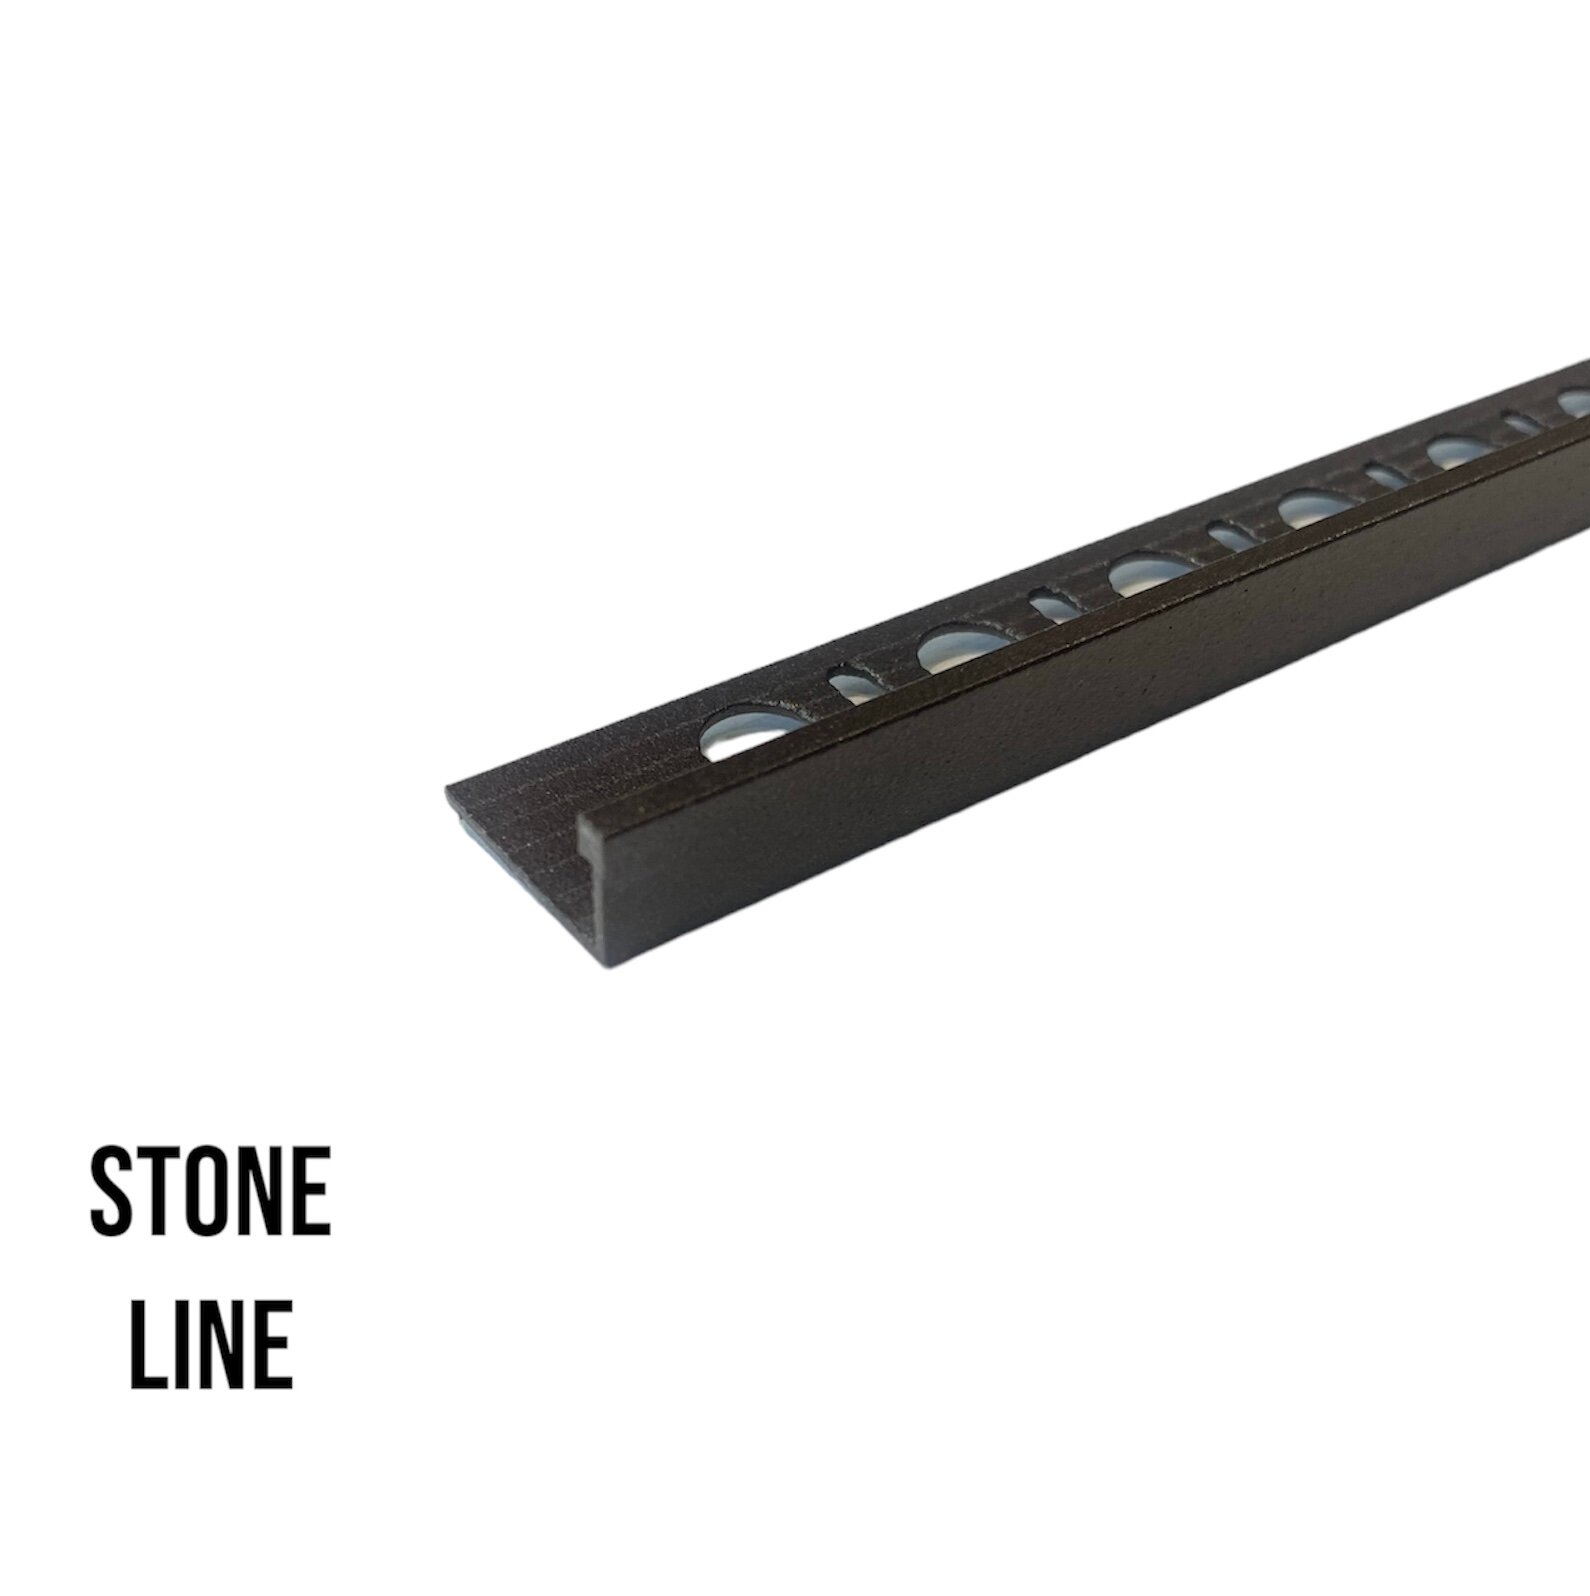 PROTERMINAL STONE LINE - Г-образный профиль эффект камня алюминиевый 10 мм длина 2.7 метра. PTA 10-SL11